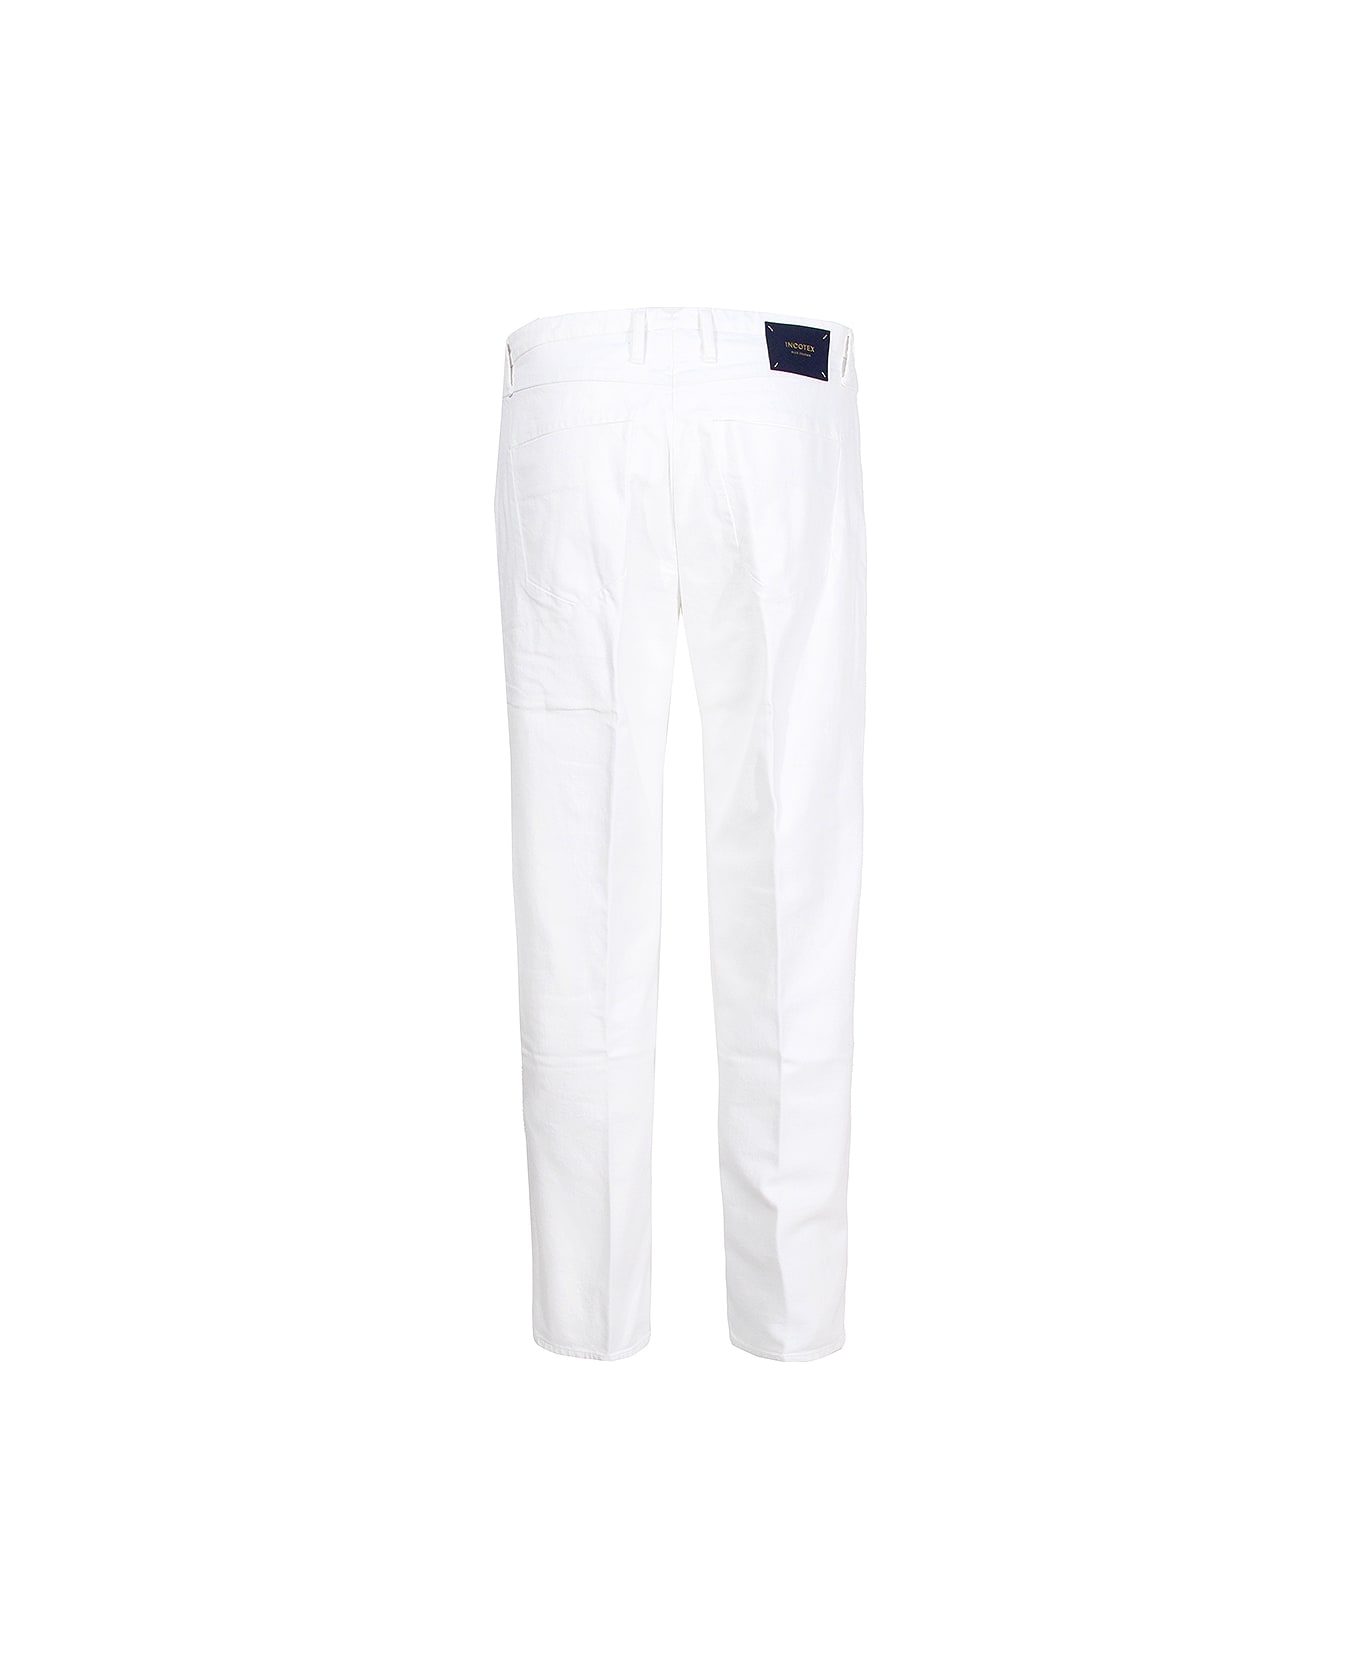 Incotex Jeans Incotex Blue Division - White